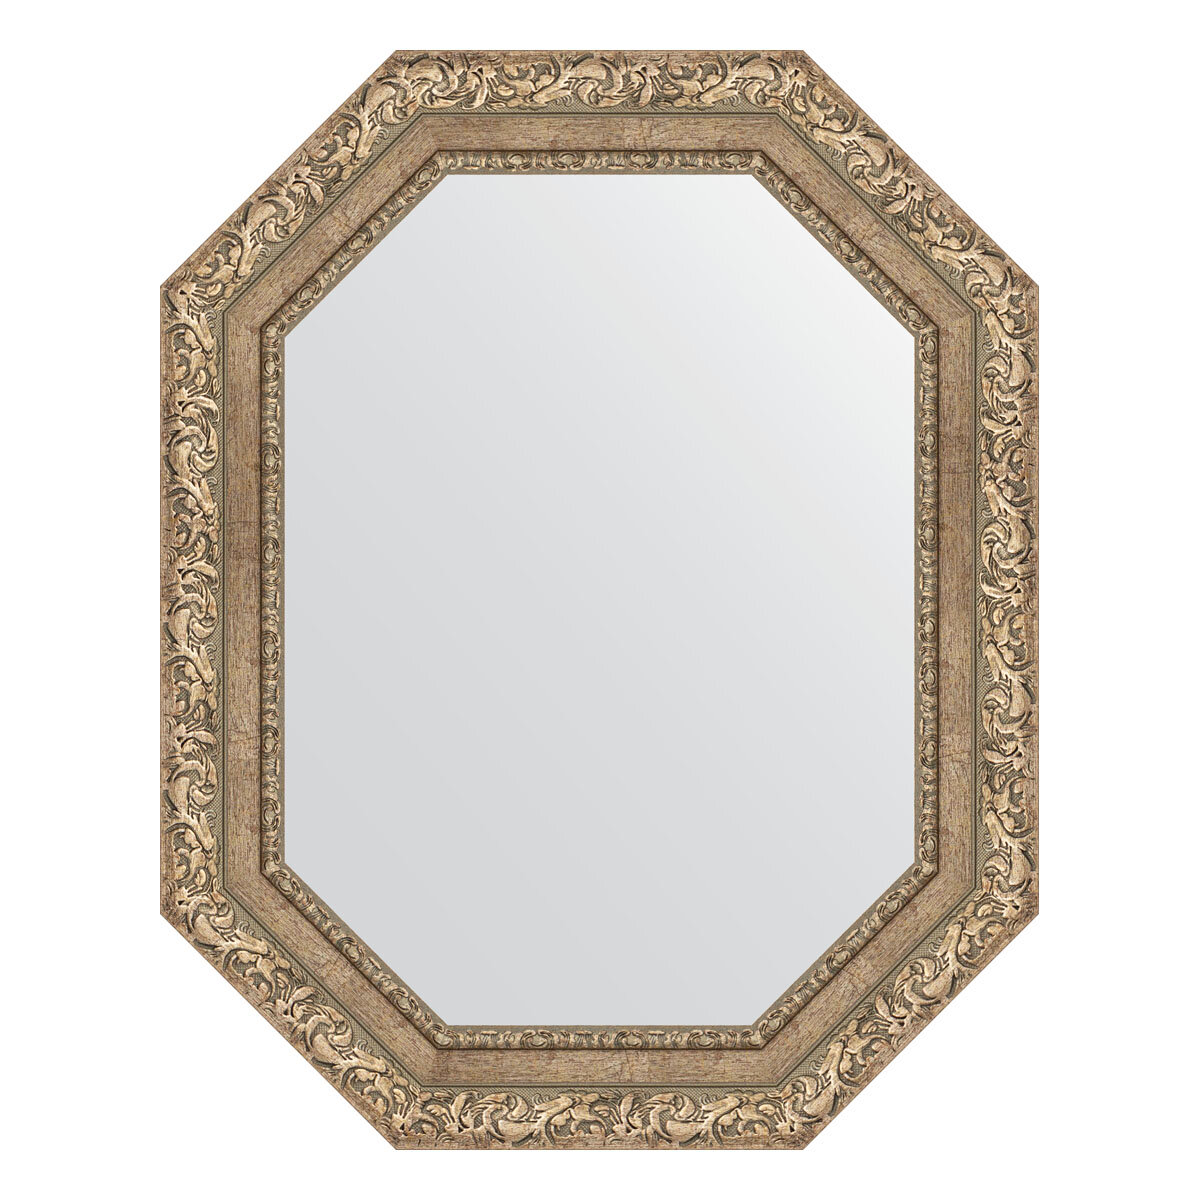 Зеркало настенное Polygon EVOFORM в багетной раме виньетка античное серебро, 60х75 см, для гостиной, прихожей, спальни и ванной комнаты, BY 7150